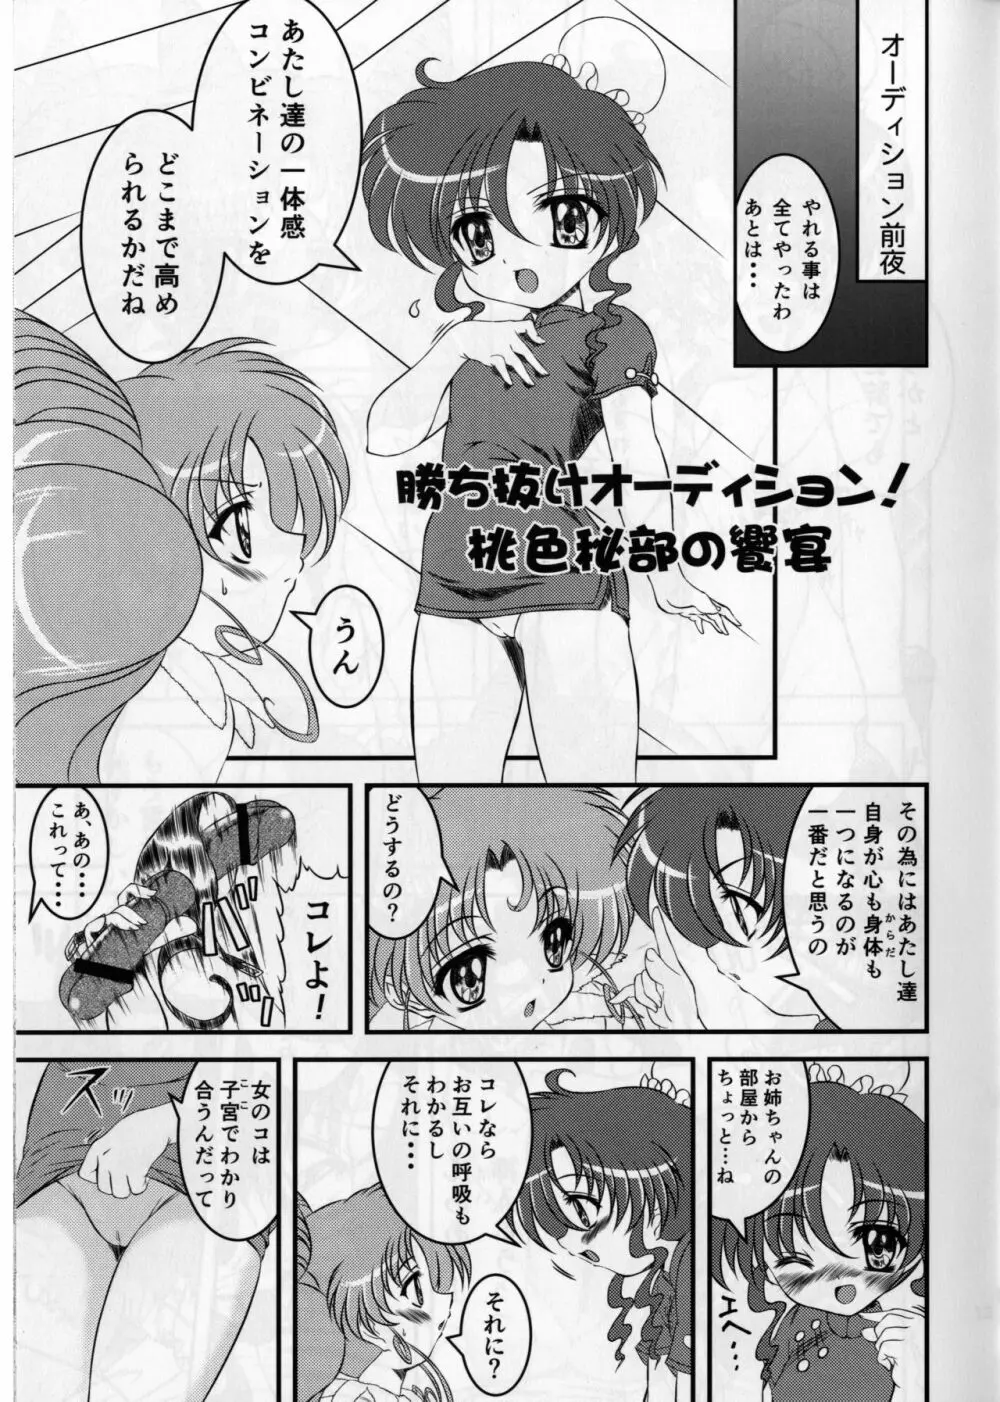 ぴんく・しゅがぁ 20th Anniversary Special 13ページ